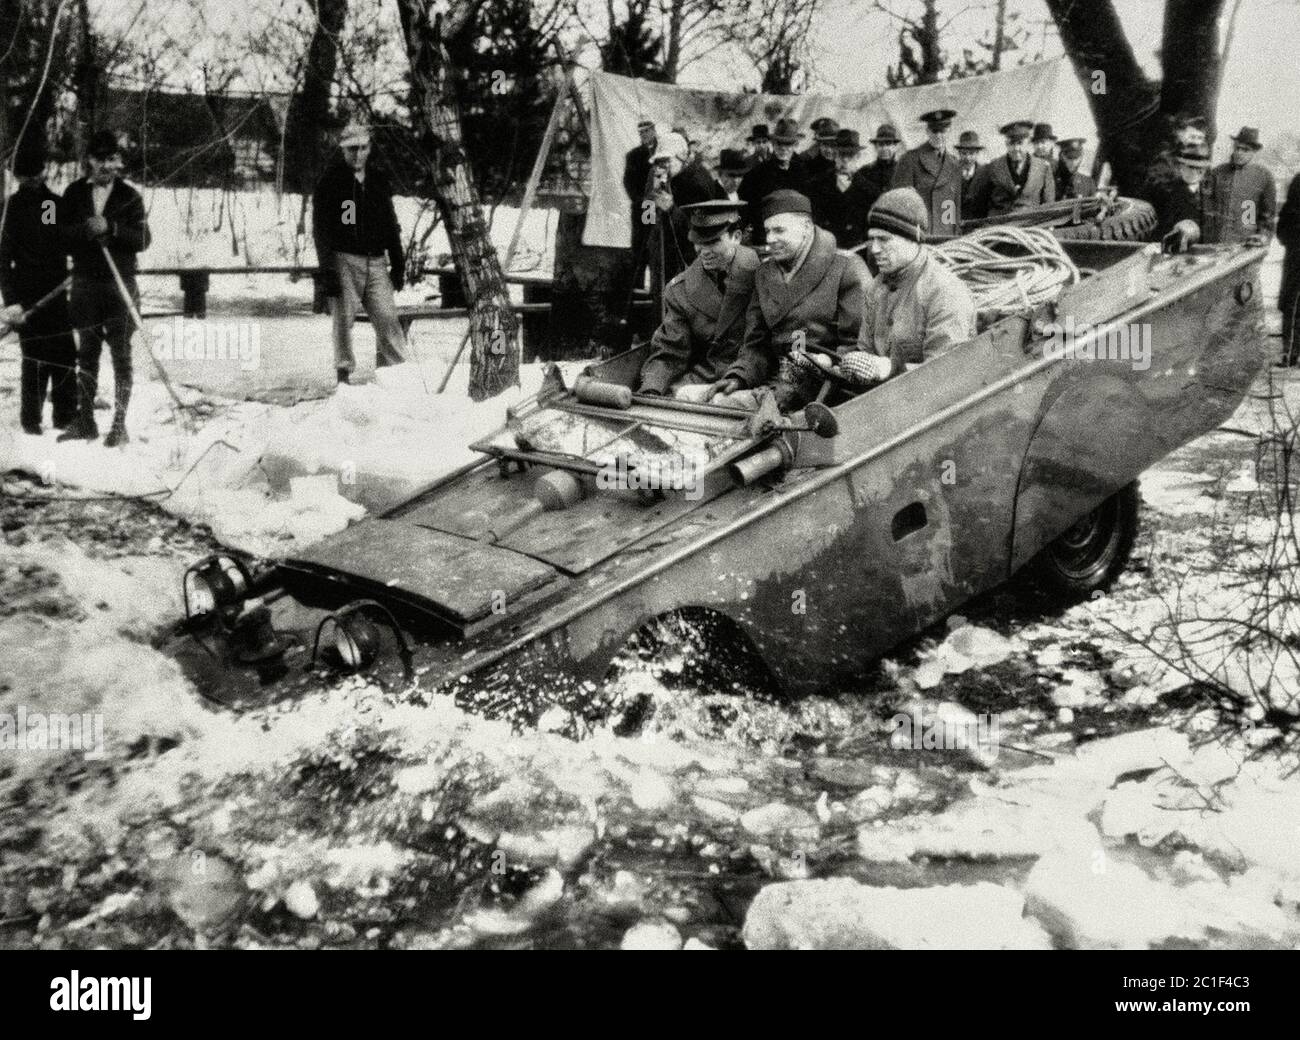 1943, marzo de 23. Uno de los nuevos productos - un jeep anfibio producido para el ejército de los EE.UU., se desliza en el agua helada para las pruebas, en el área de Detroit Foto de stock